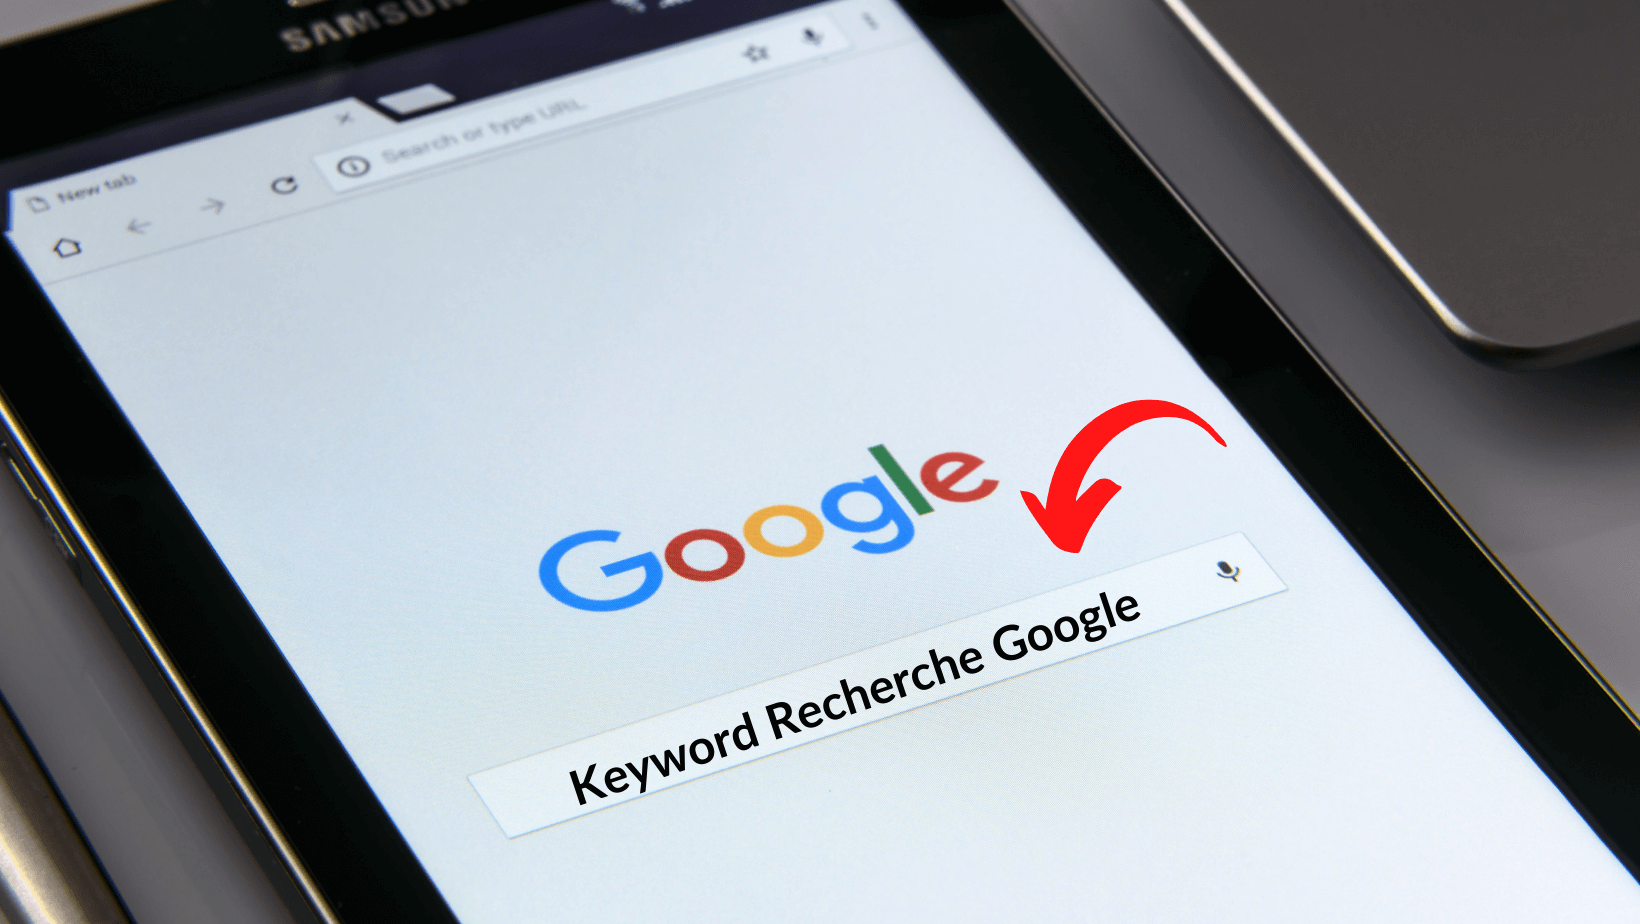 Keyword Recherche Google-was ist ein Keyword